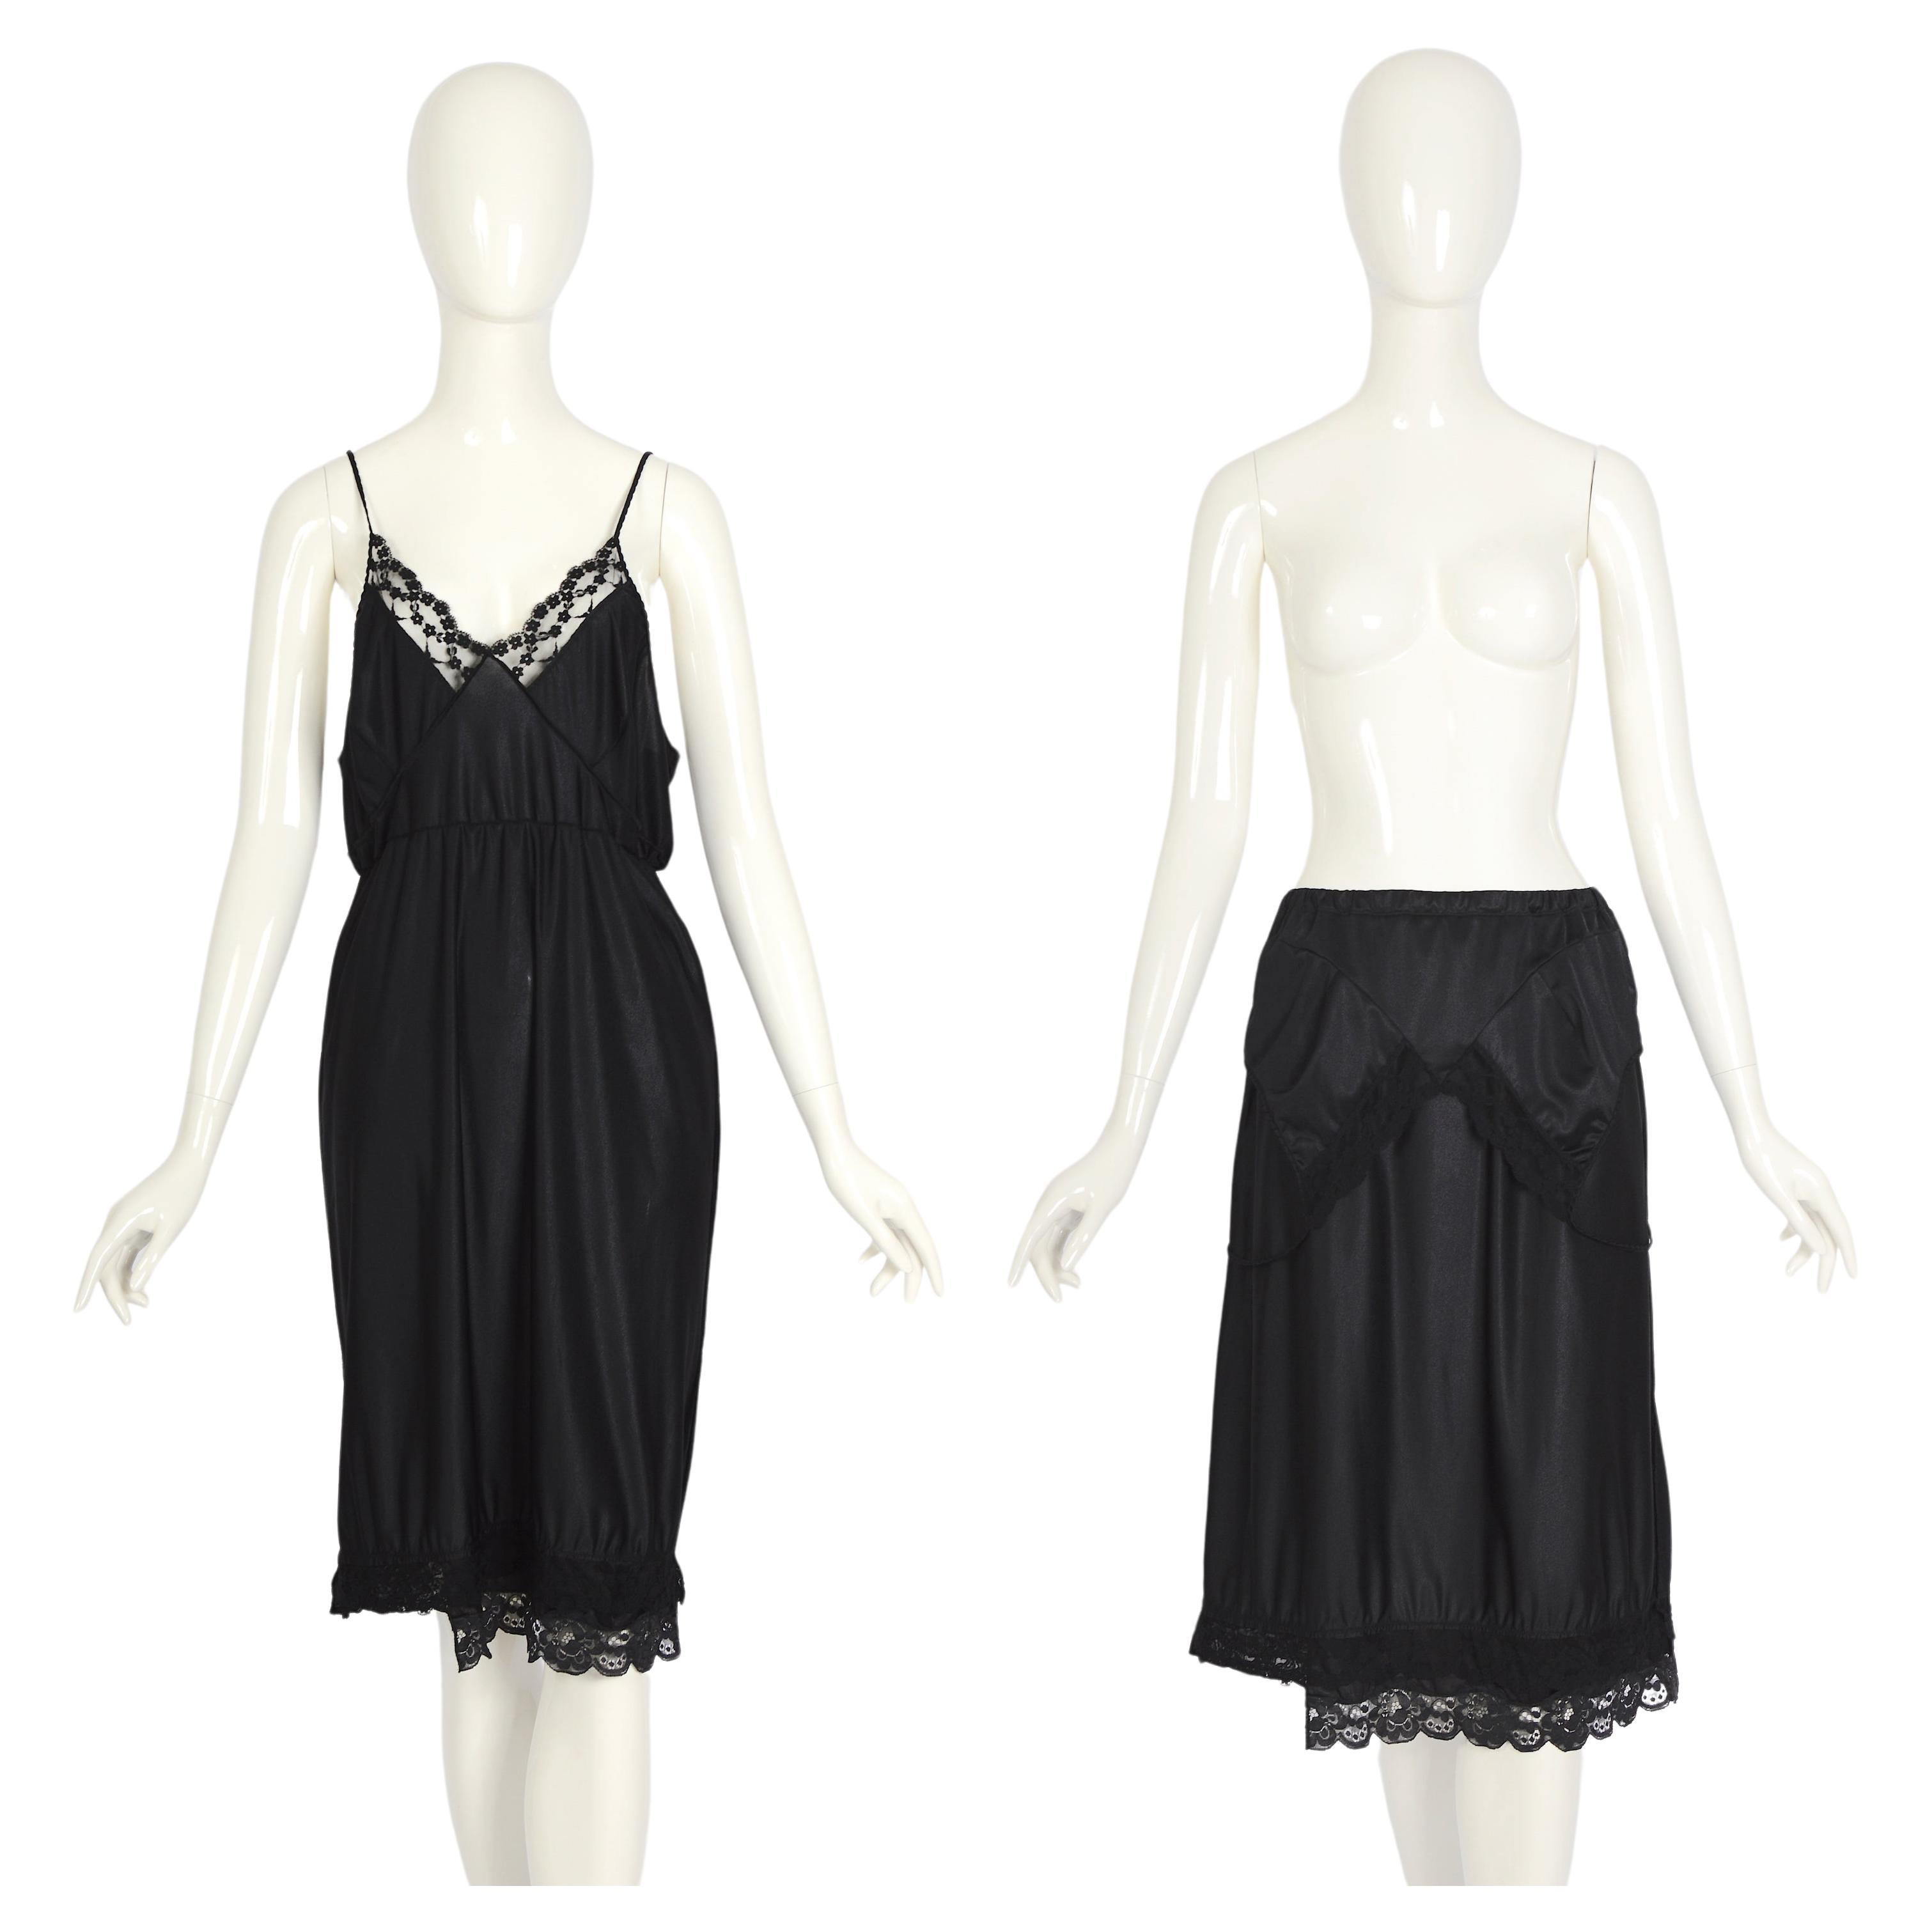 Vintage Martin Margiela artisanal ss 2003 runway black folded dress skirt For Sale